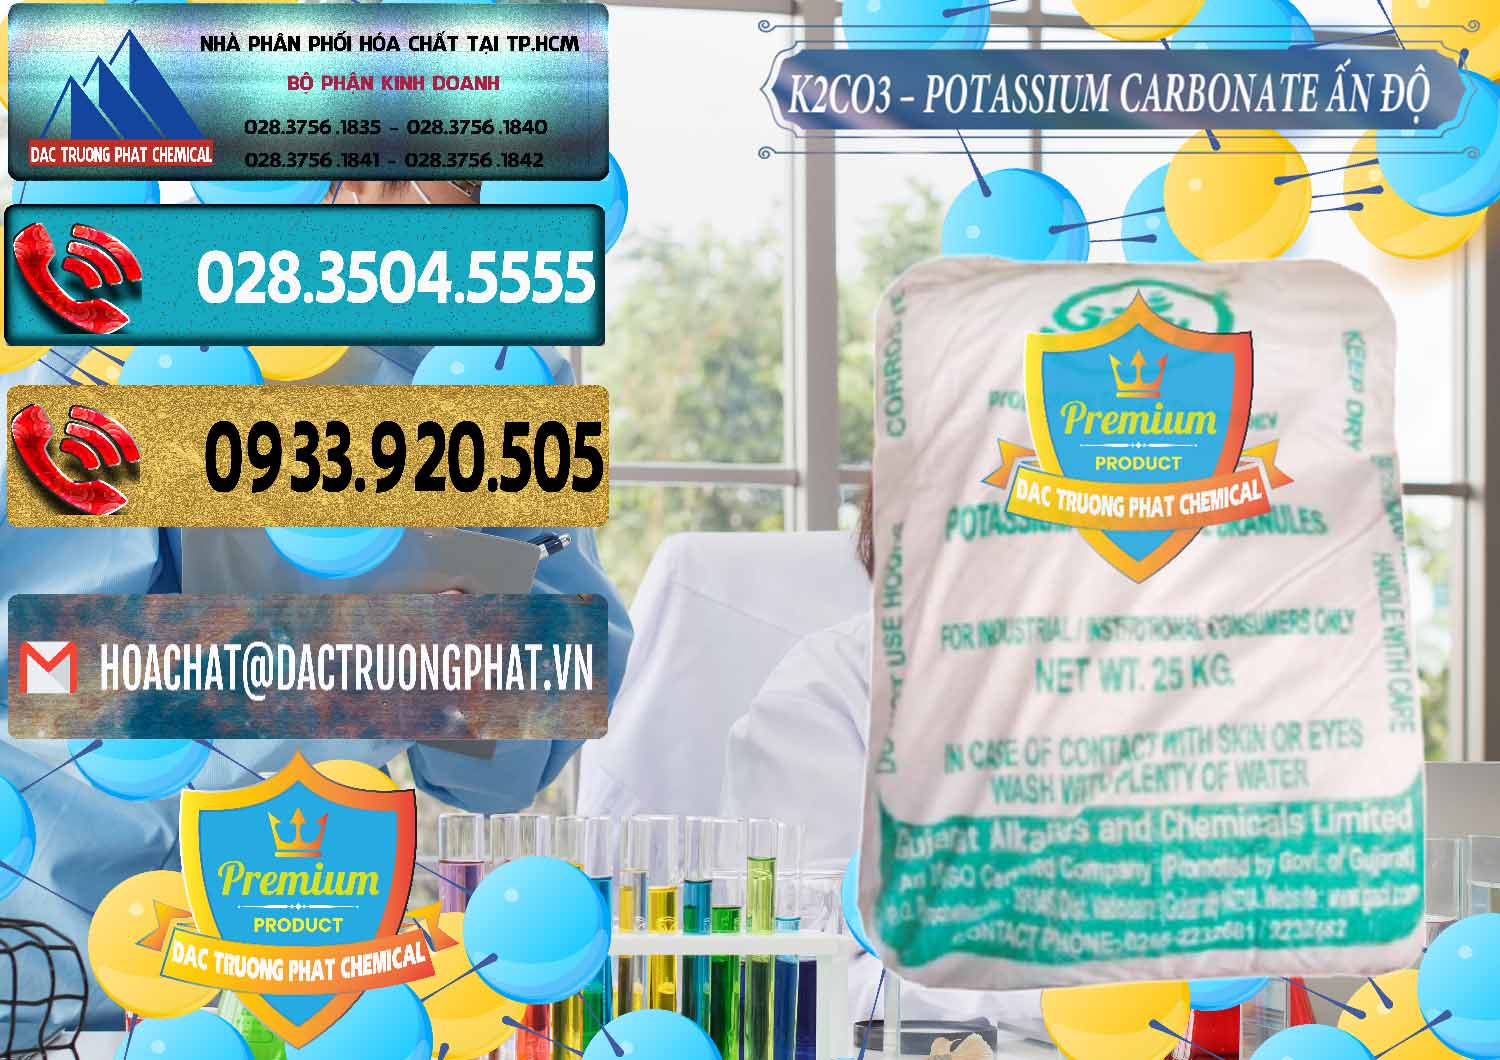 Nơi chuyên bán & cung cấp K2Co3 – Potassium Carbonate GACL Ấn Độ India - 0472 - Chuyên bán _ phân phối hóa chất tại TP.HCM - hoachatdetnhuom.com